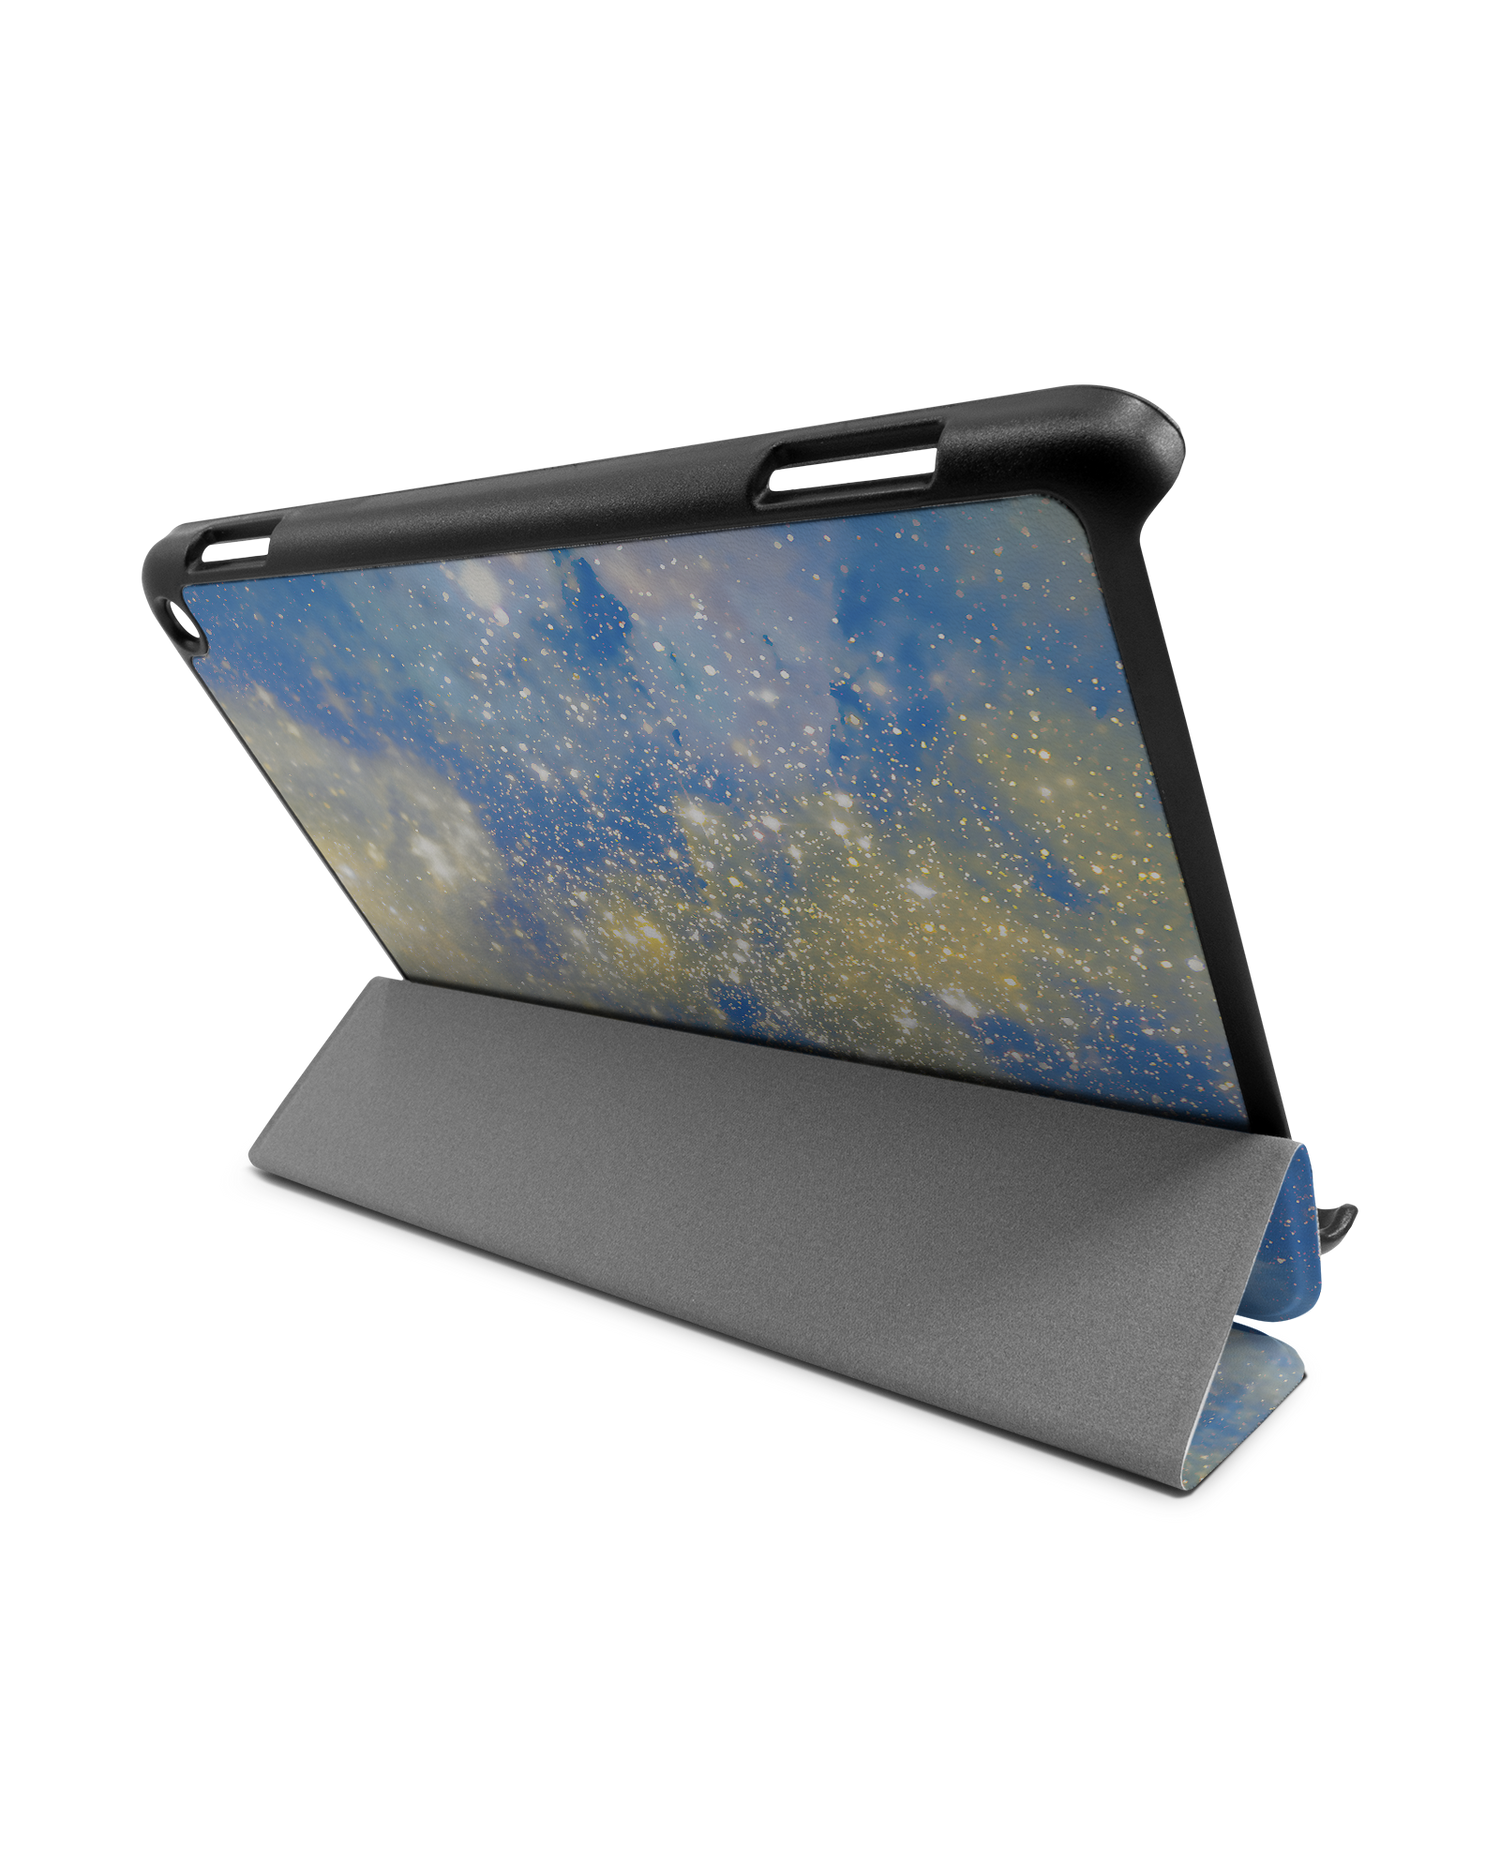 Spaced Out Tablet Smart Case für Amazon Fire HD 8 (2022), Amazon Fire HD 8 Plus (2022), Amazon Fire HD 8 (2020), Amazon Fire HD 8 Plus (2020): Aufgestellt im Querformat